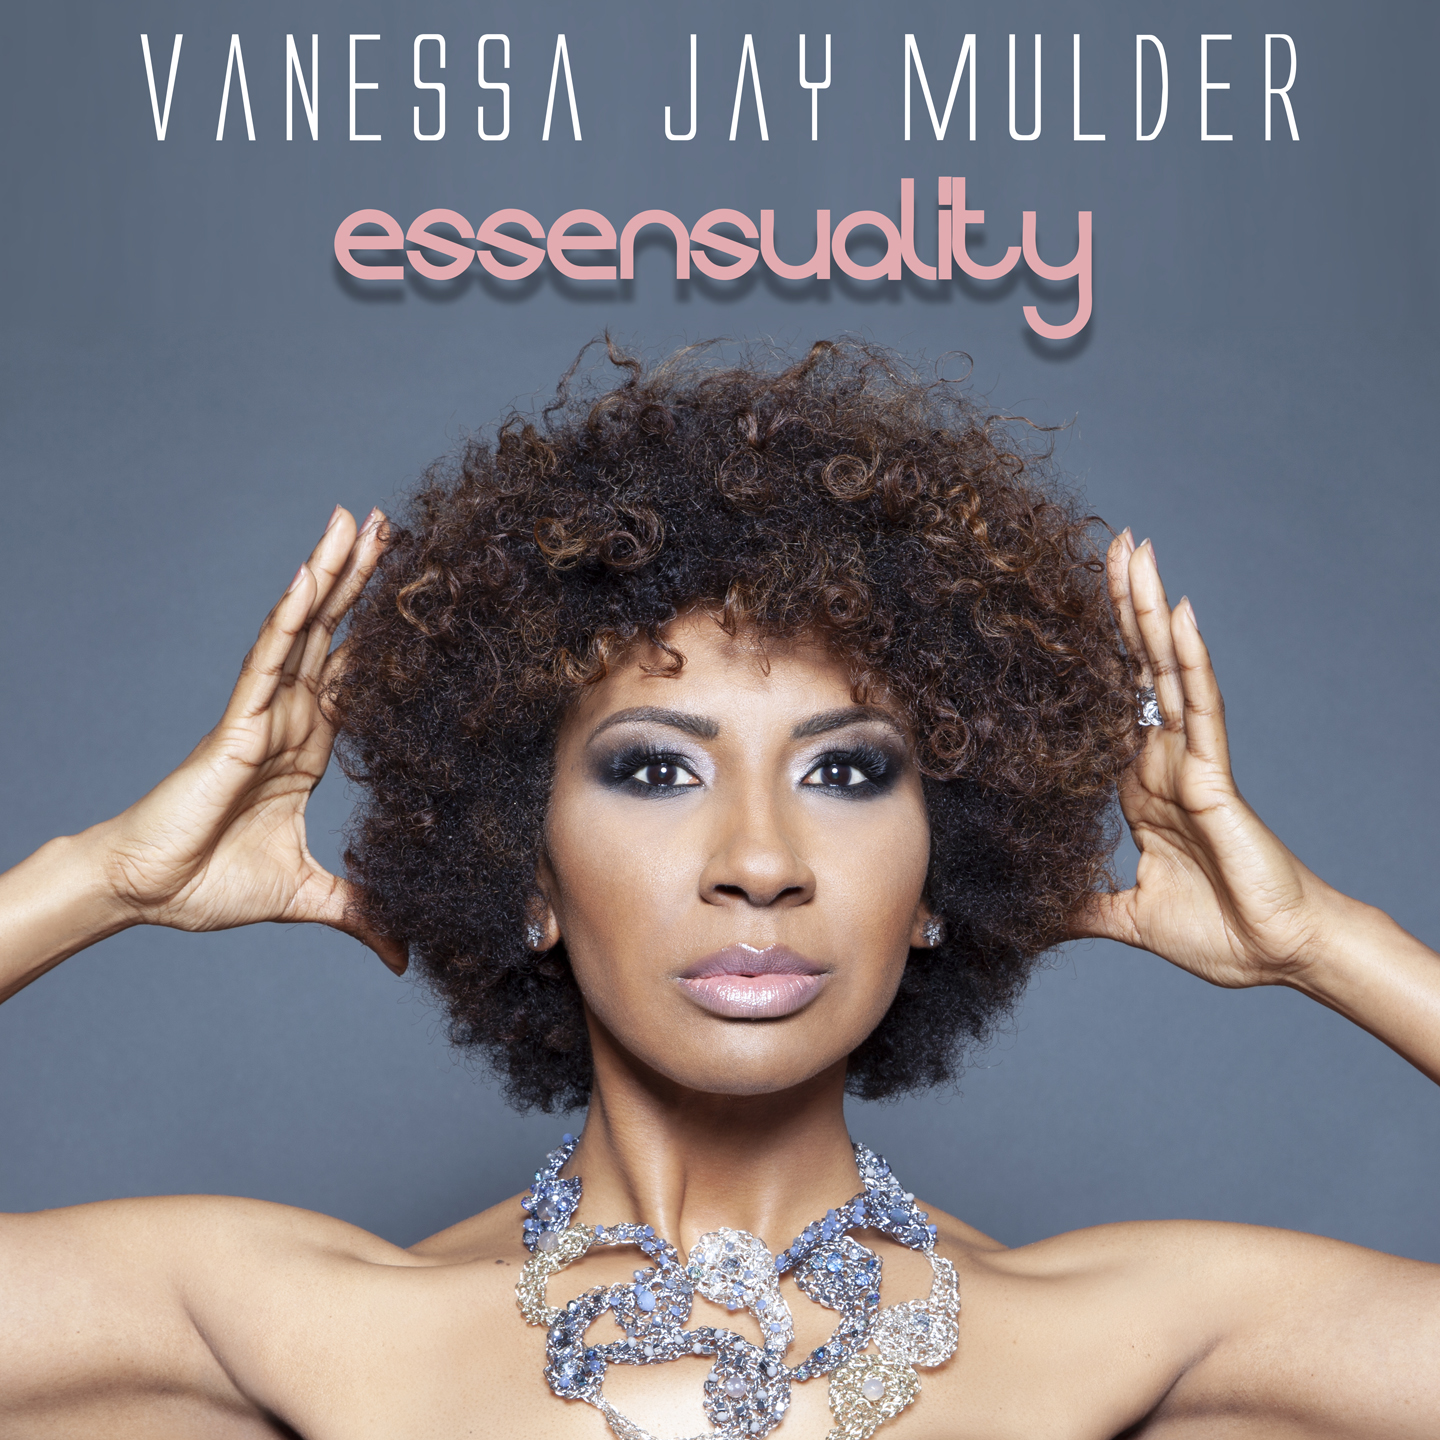 Vanessa Jay Mulder, fuori il 12 luglio il nuovo singolo ed EP